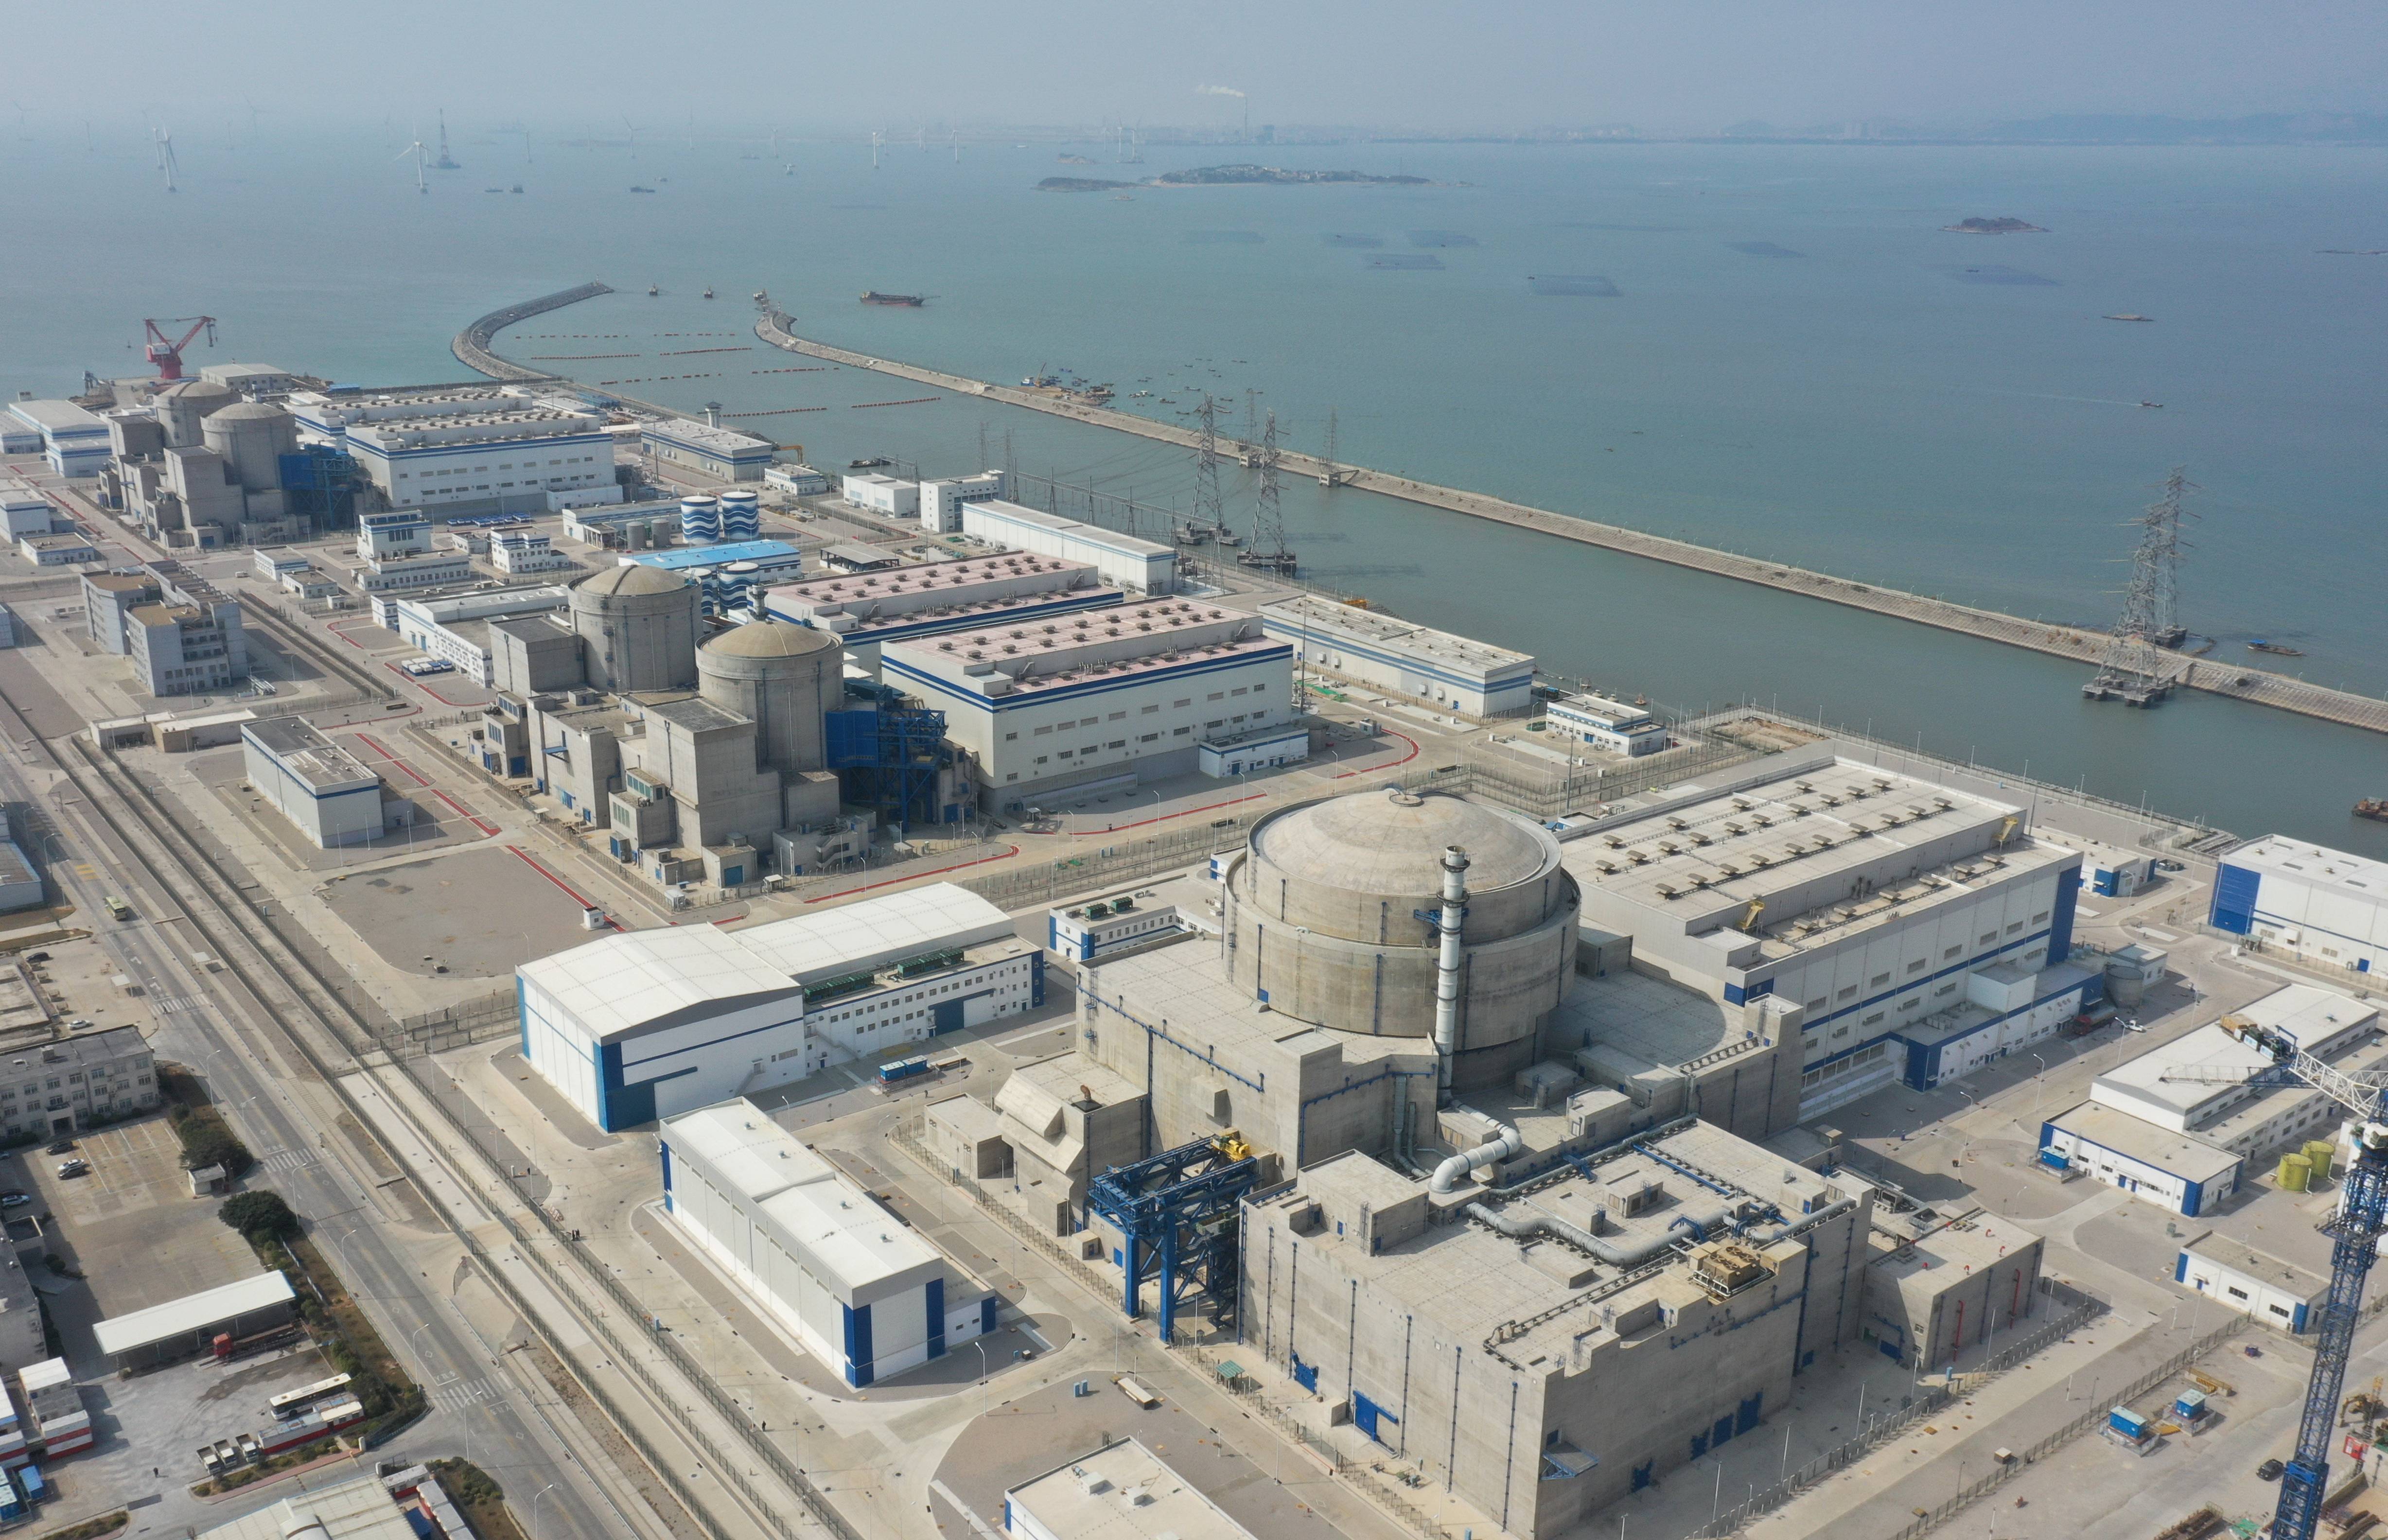 1月27日拍摄的中核集团福清核电有限公司核电机组外景(无人机照片)